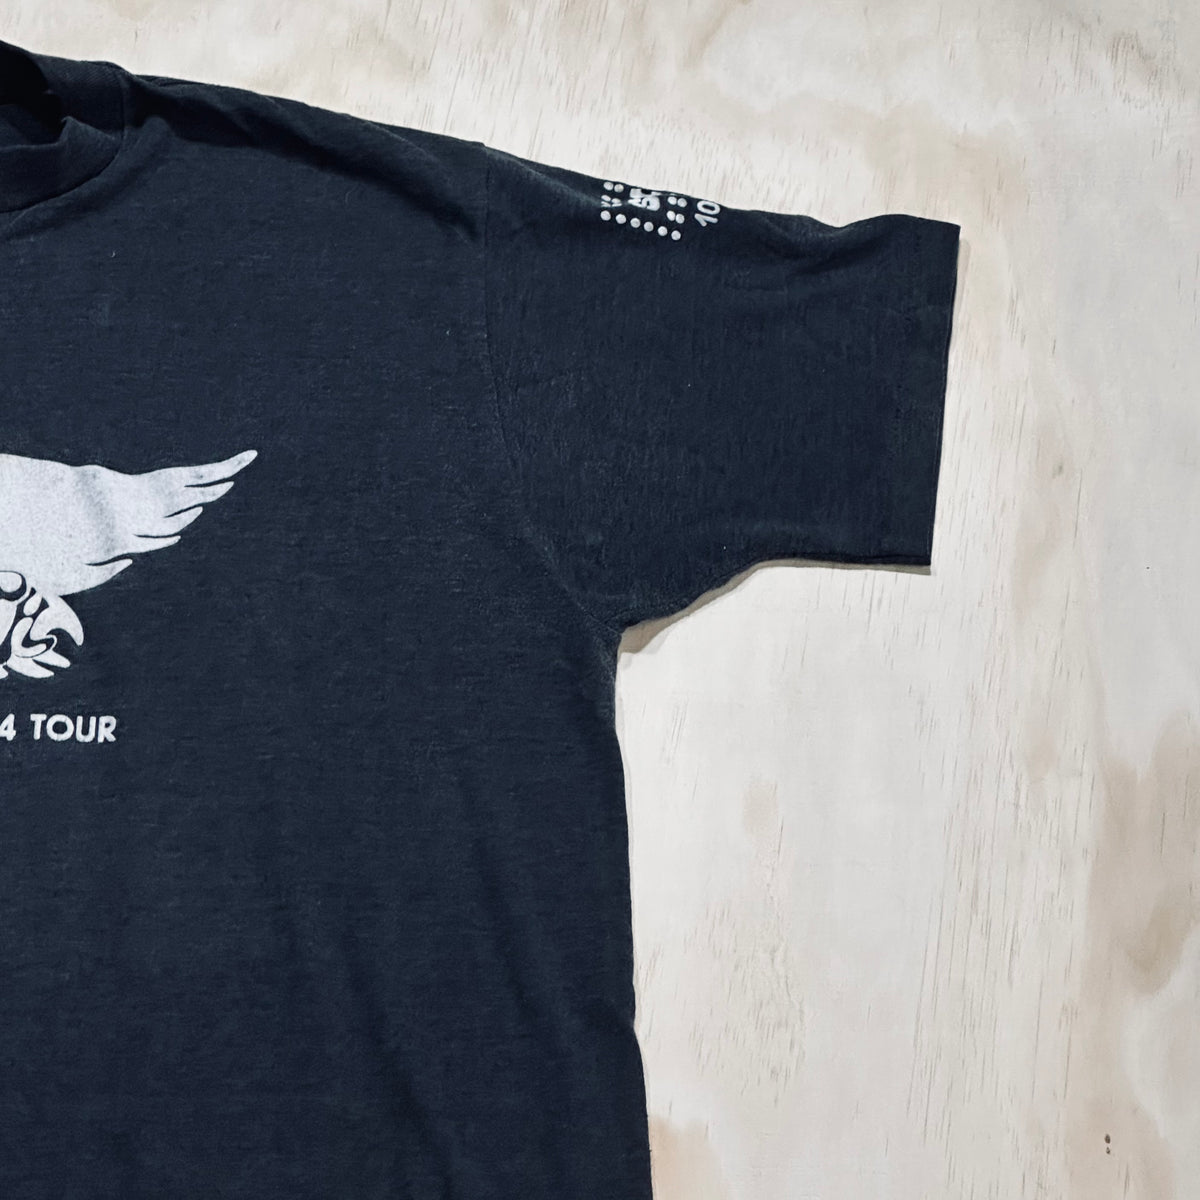 1986 Aerosmith Back In The Saddle 1984 Tour shirt